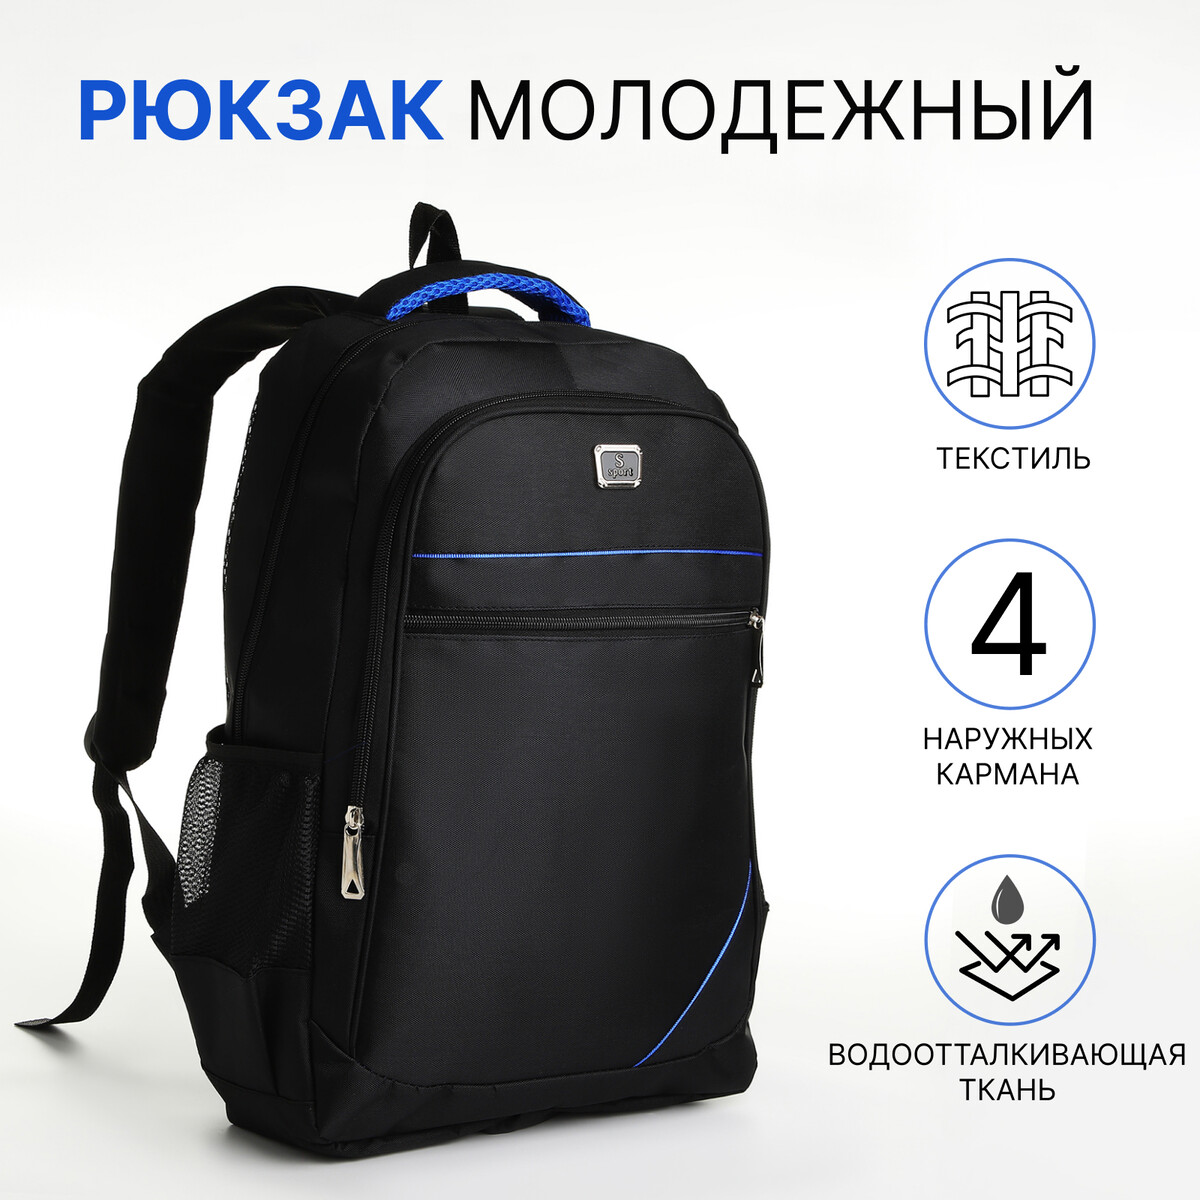 Рюкзак молодежный из текстиля на молнии, 4 кармана, цвет черный/синий рюкзак молодежный водонепроницаемый на молнии 3 кармана голубой синий